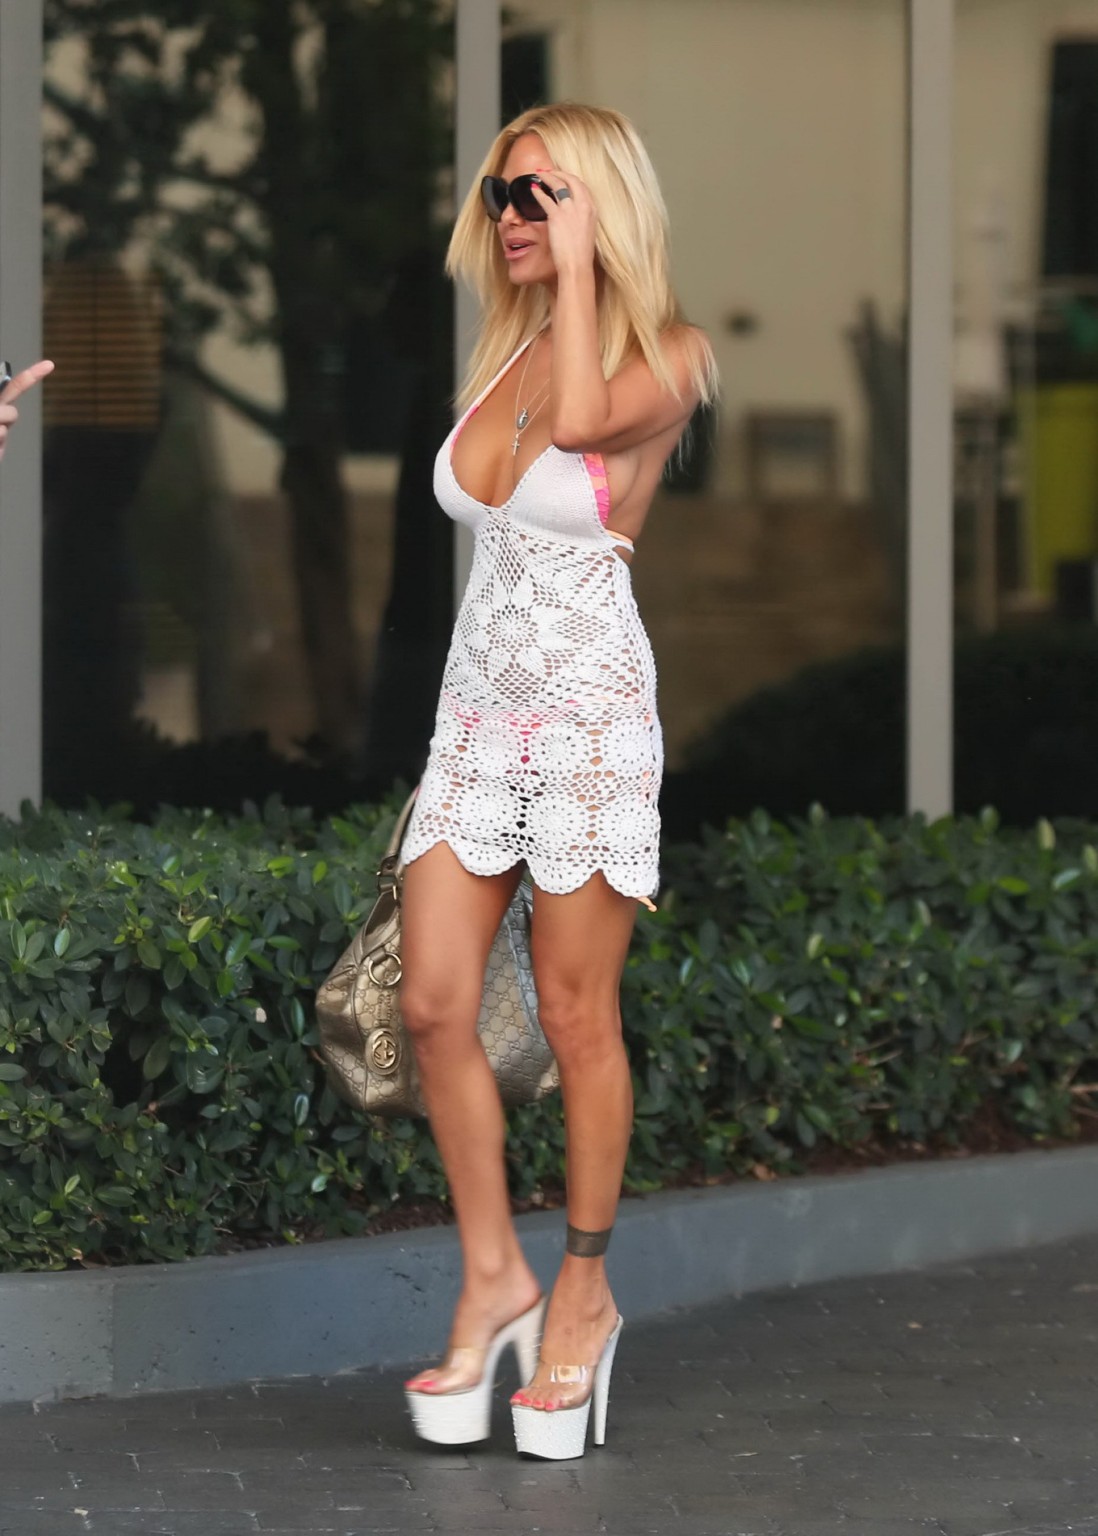 Shauna sand transparente à bikini quittant son hôtel à miami
 #75242758